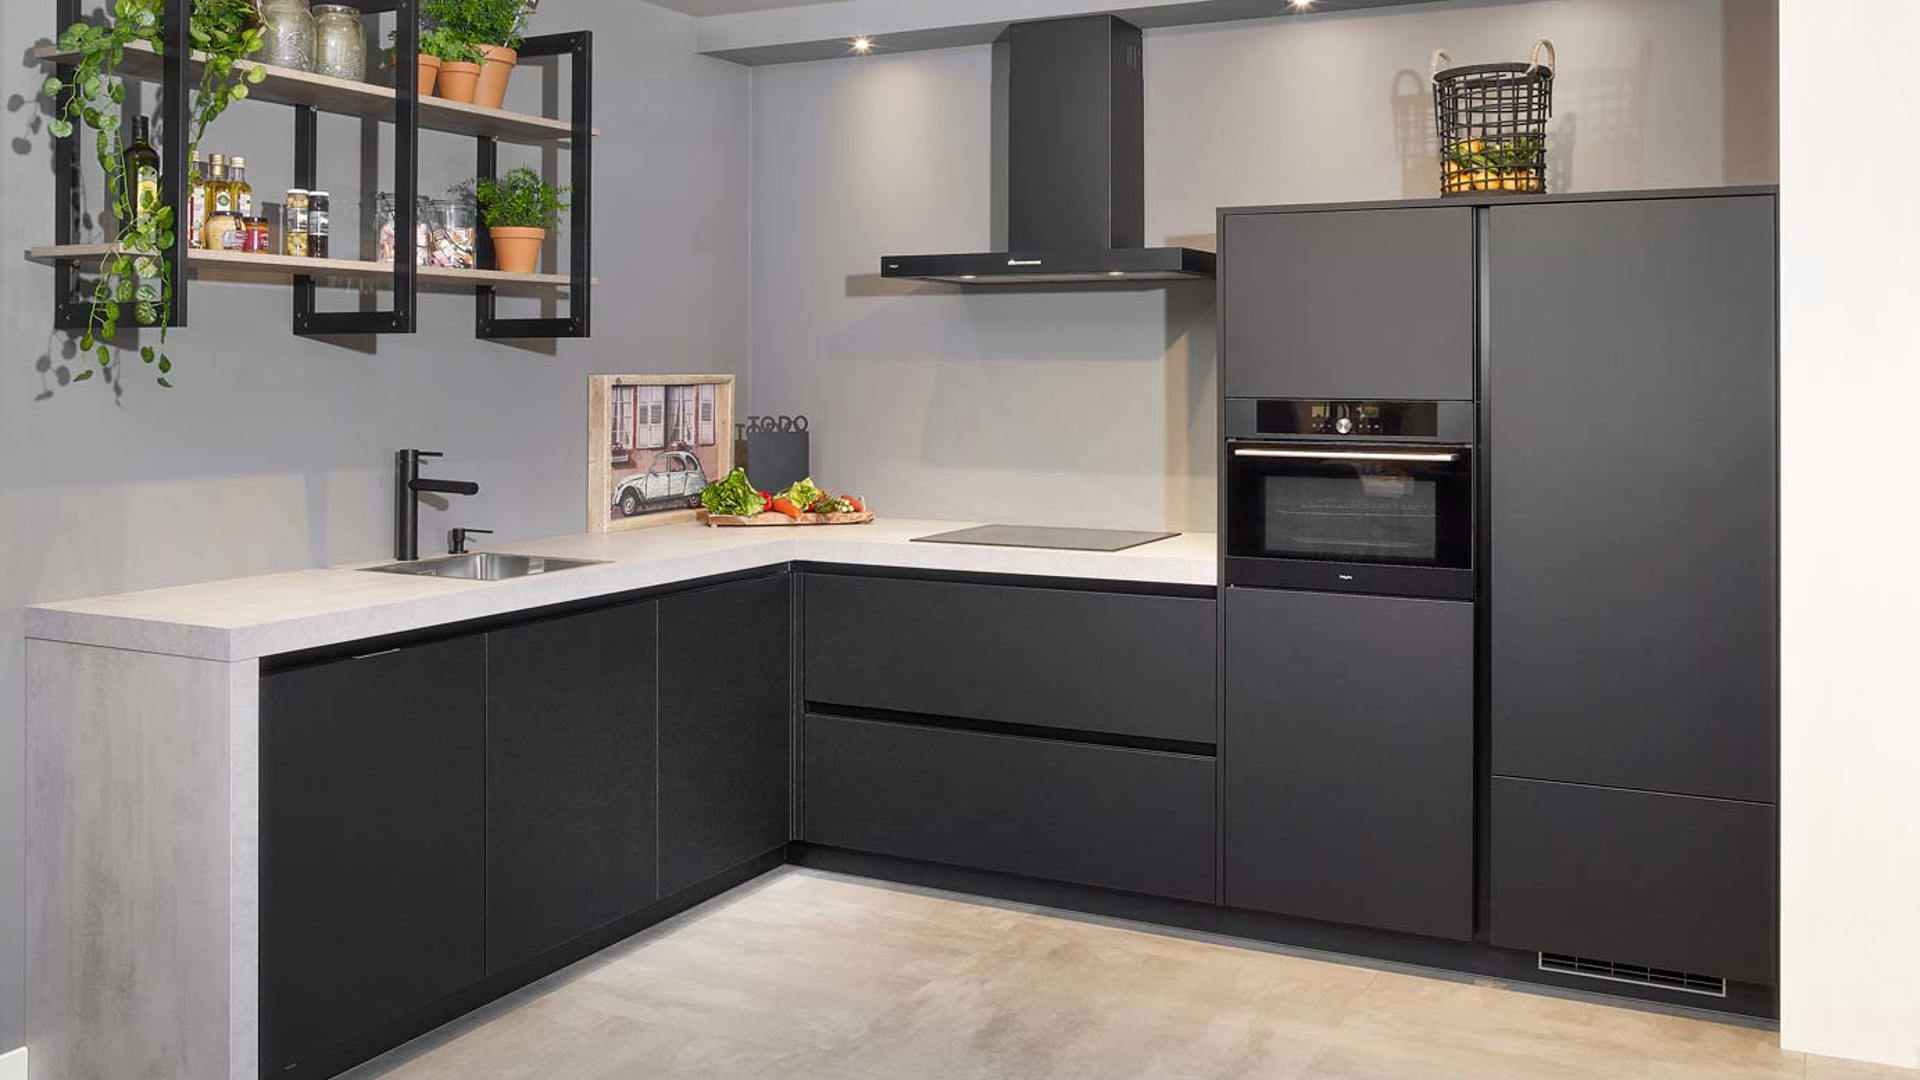 Moderne keuken industrieel met zwarte greeploze fronten en betonlook werkblad